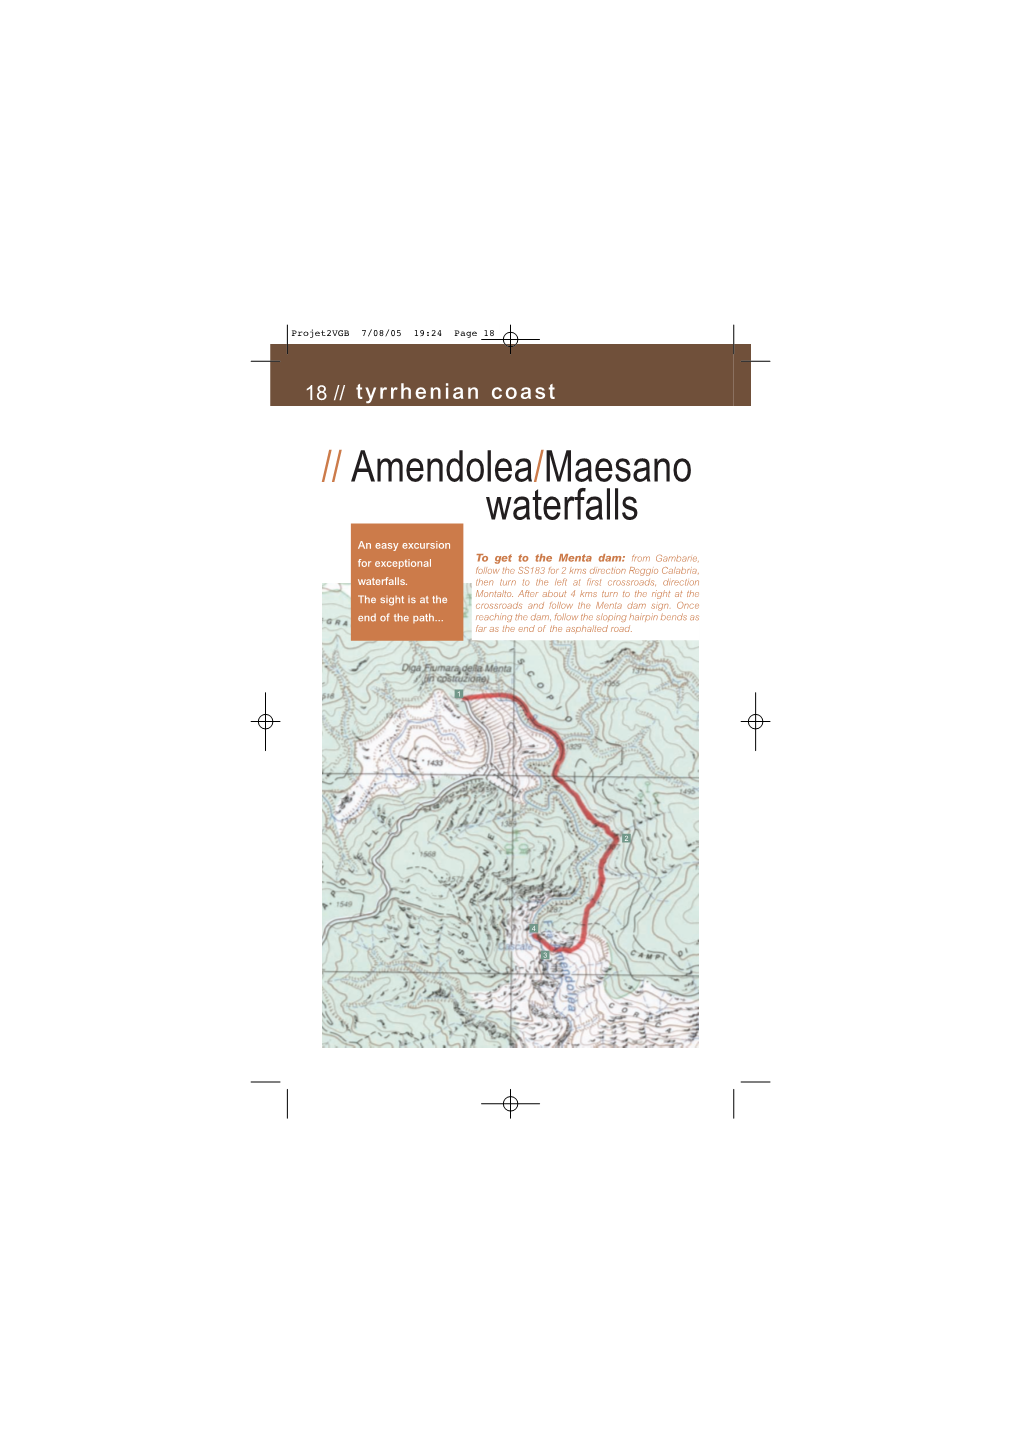 Amendolea/Maesano Waterfalls